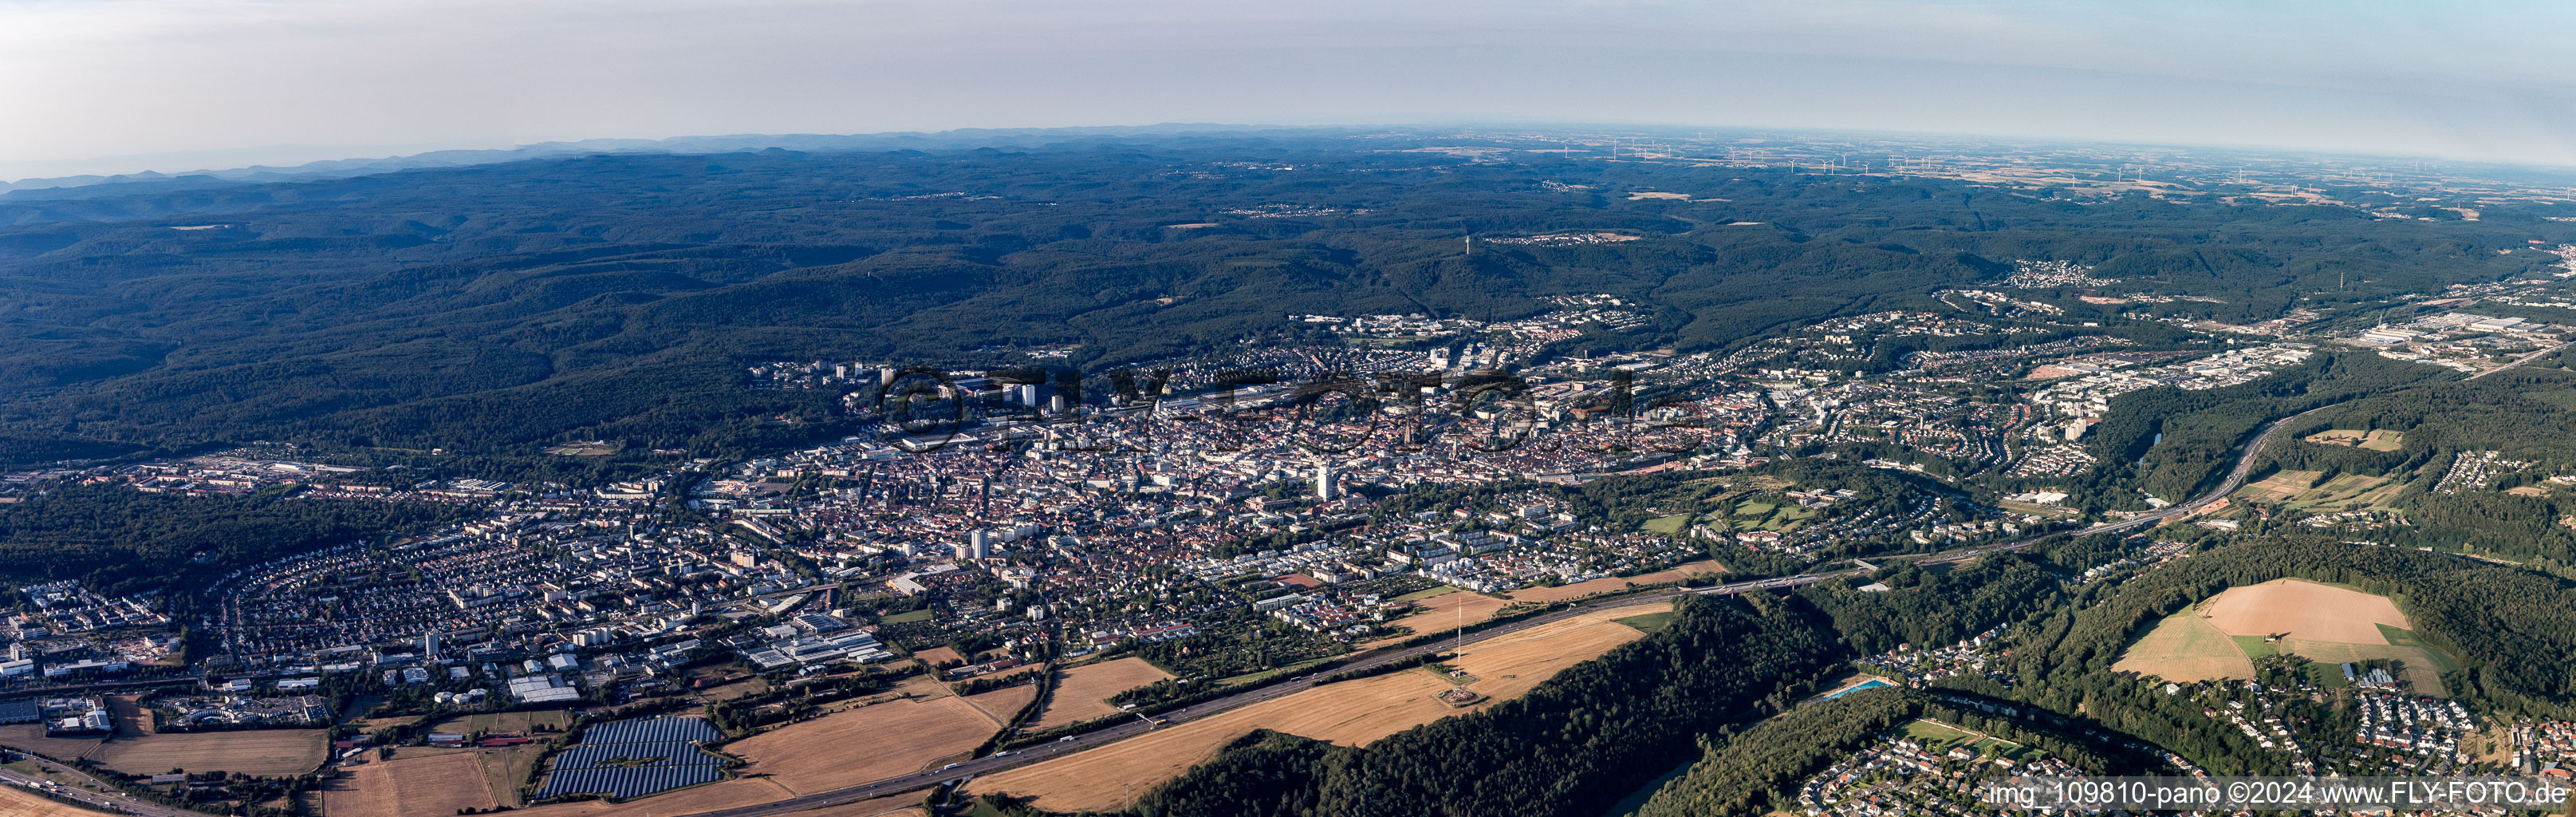 Luftbild von Panorama in Kaiserslautern im Bundesland Rheinland-Pfalz, Deutschland